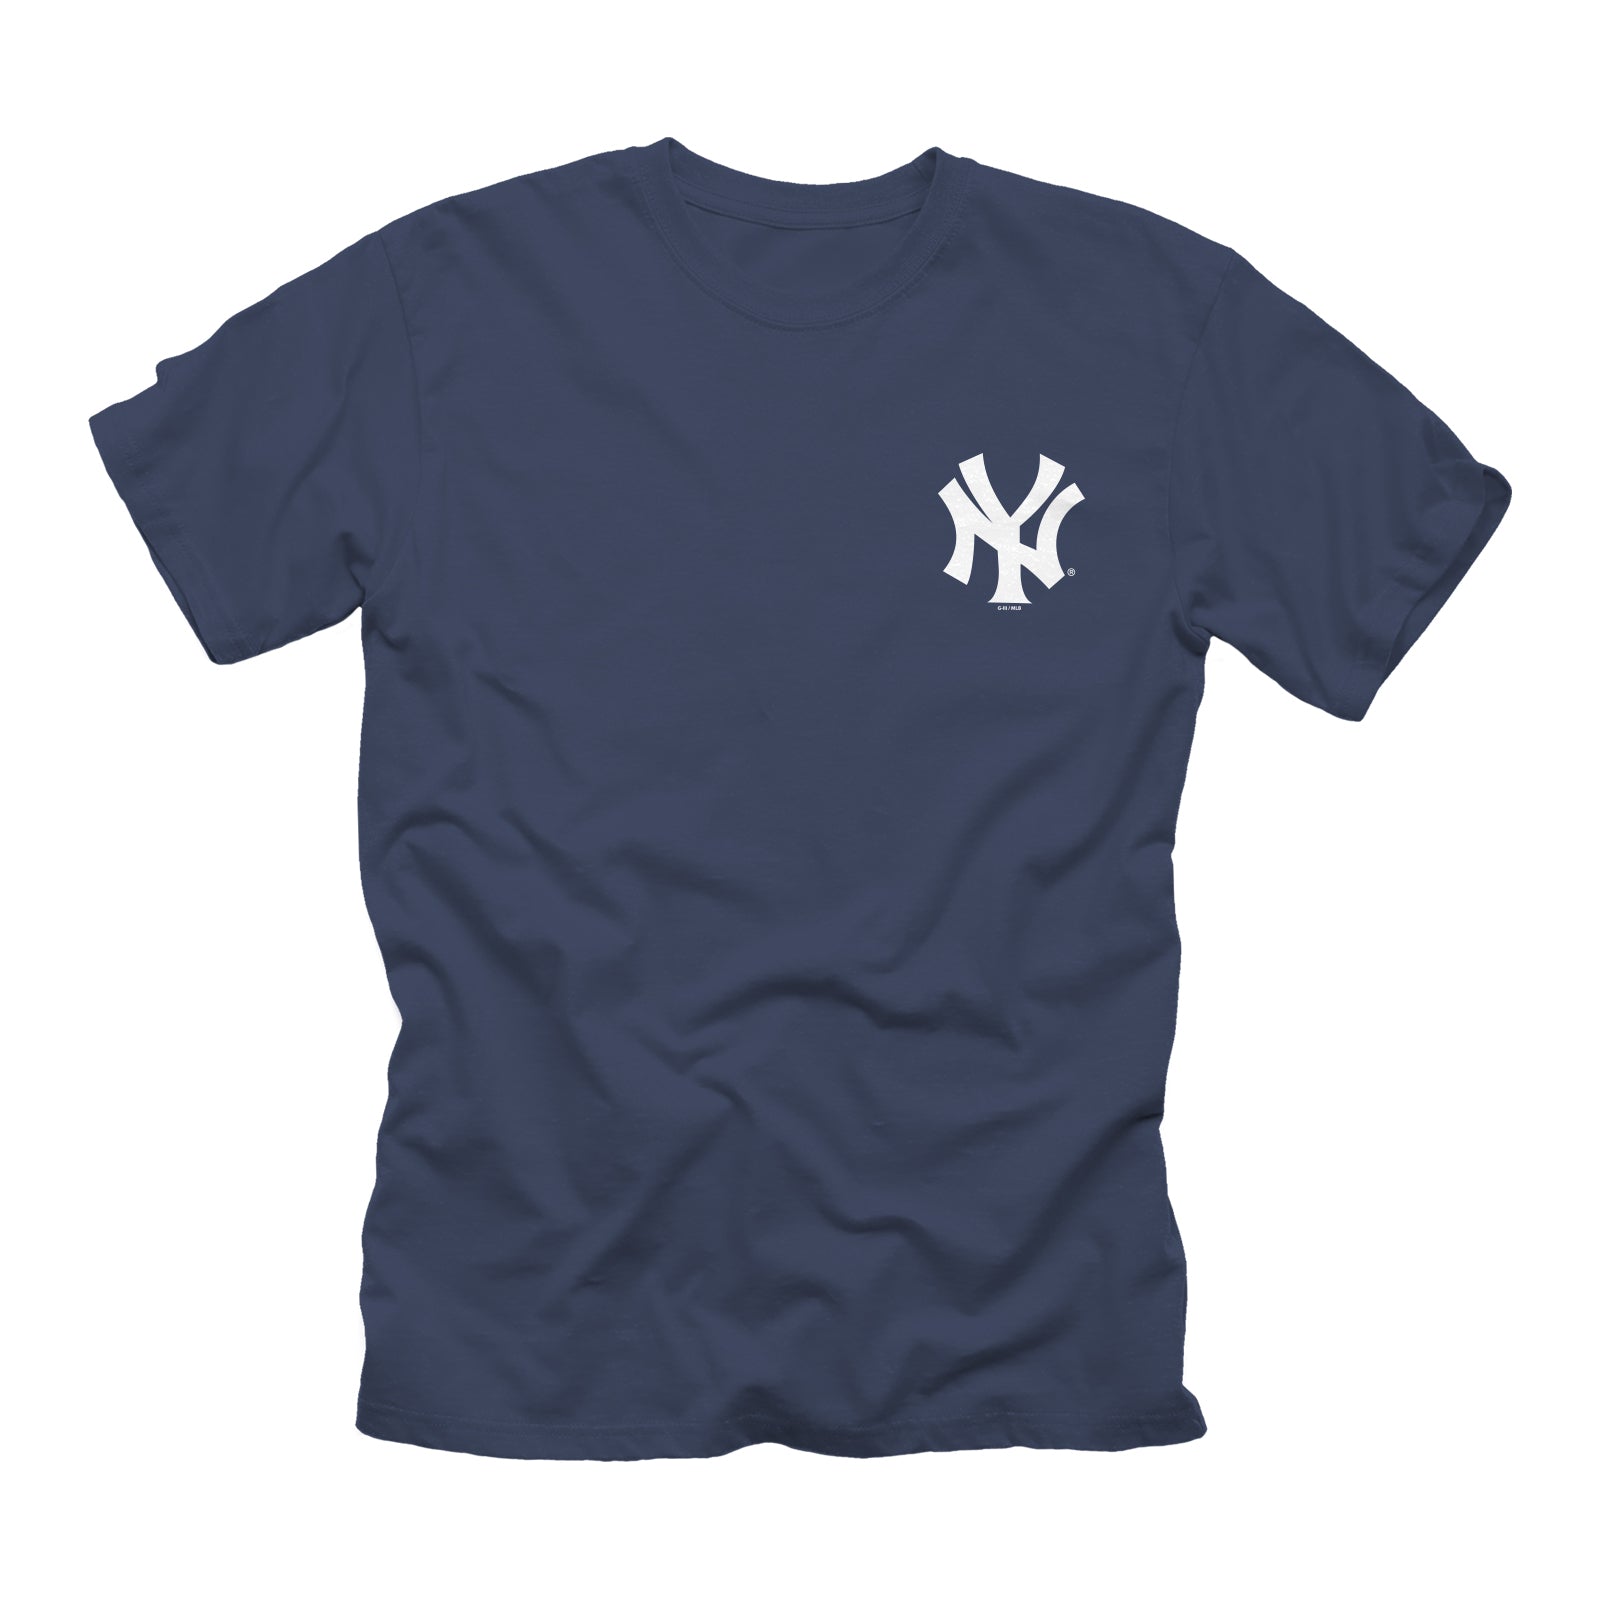 New York Yankees Men's Apparel, Men's MLB Apparel